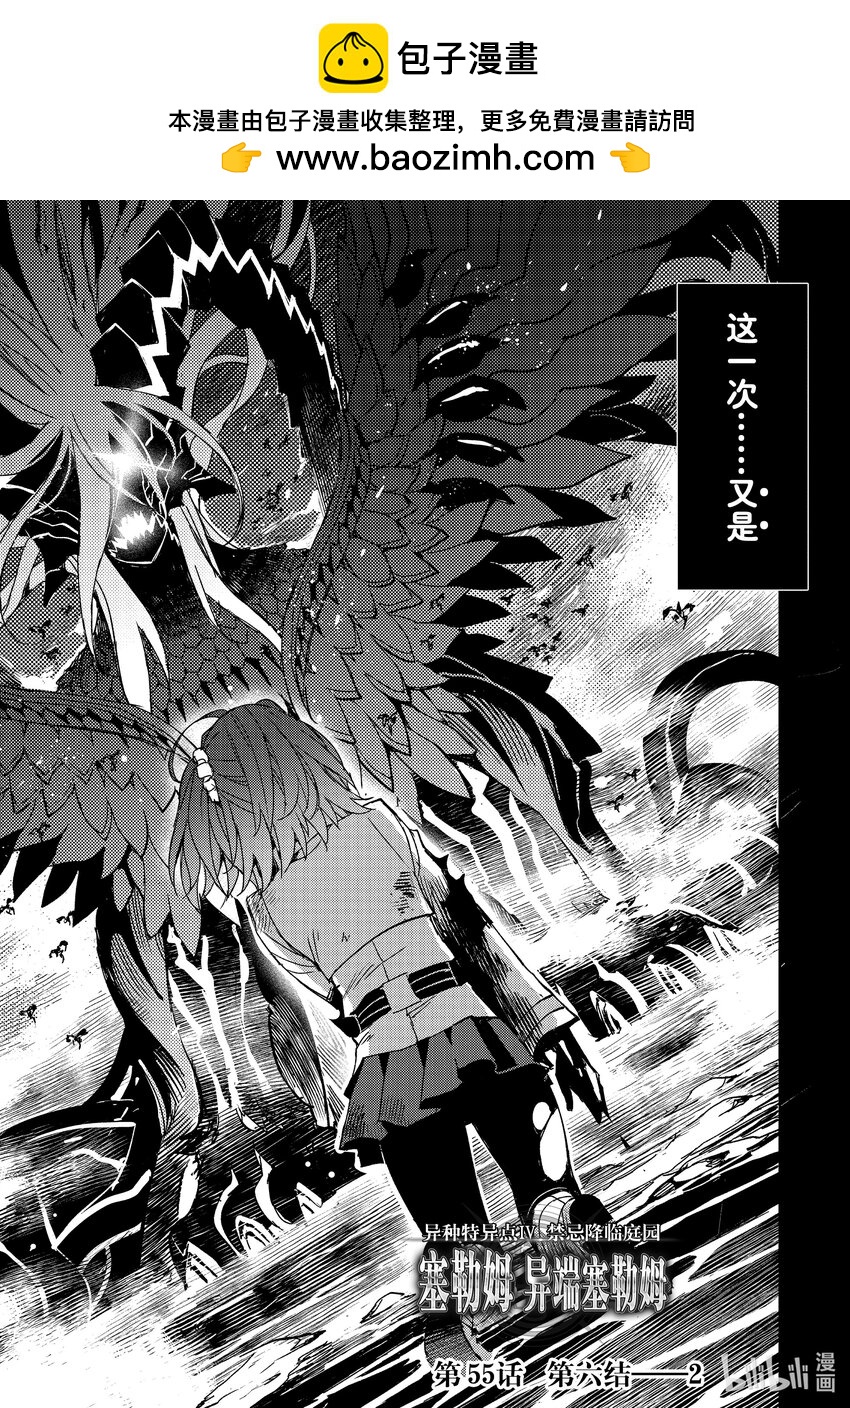 Fate/Grand Order -Epic of Remnant- 亞種特異點Ⅳ 禁忌降臨庭園 塞勒姆 異端塞勒姆 - 055 第六結—2 - 2